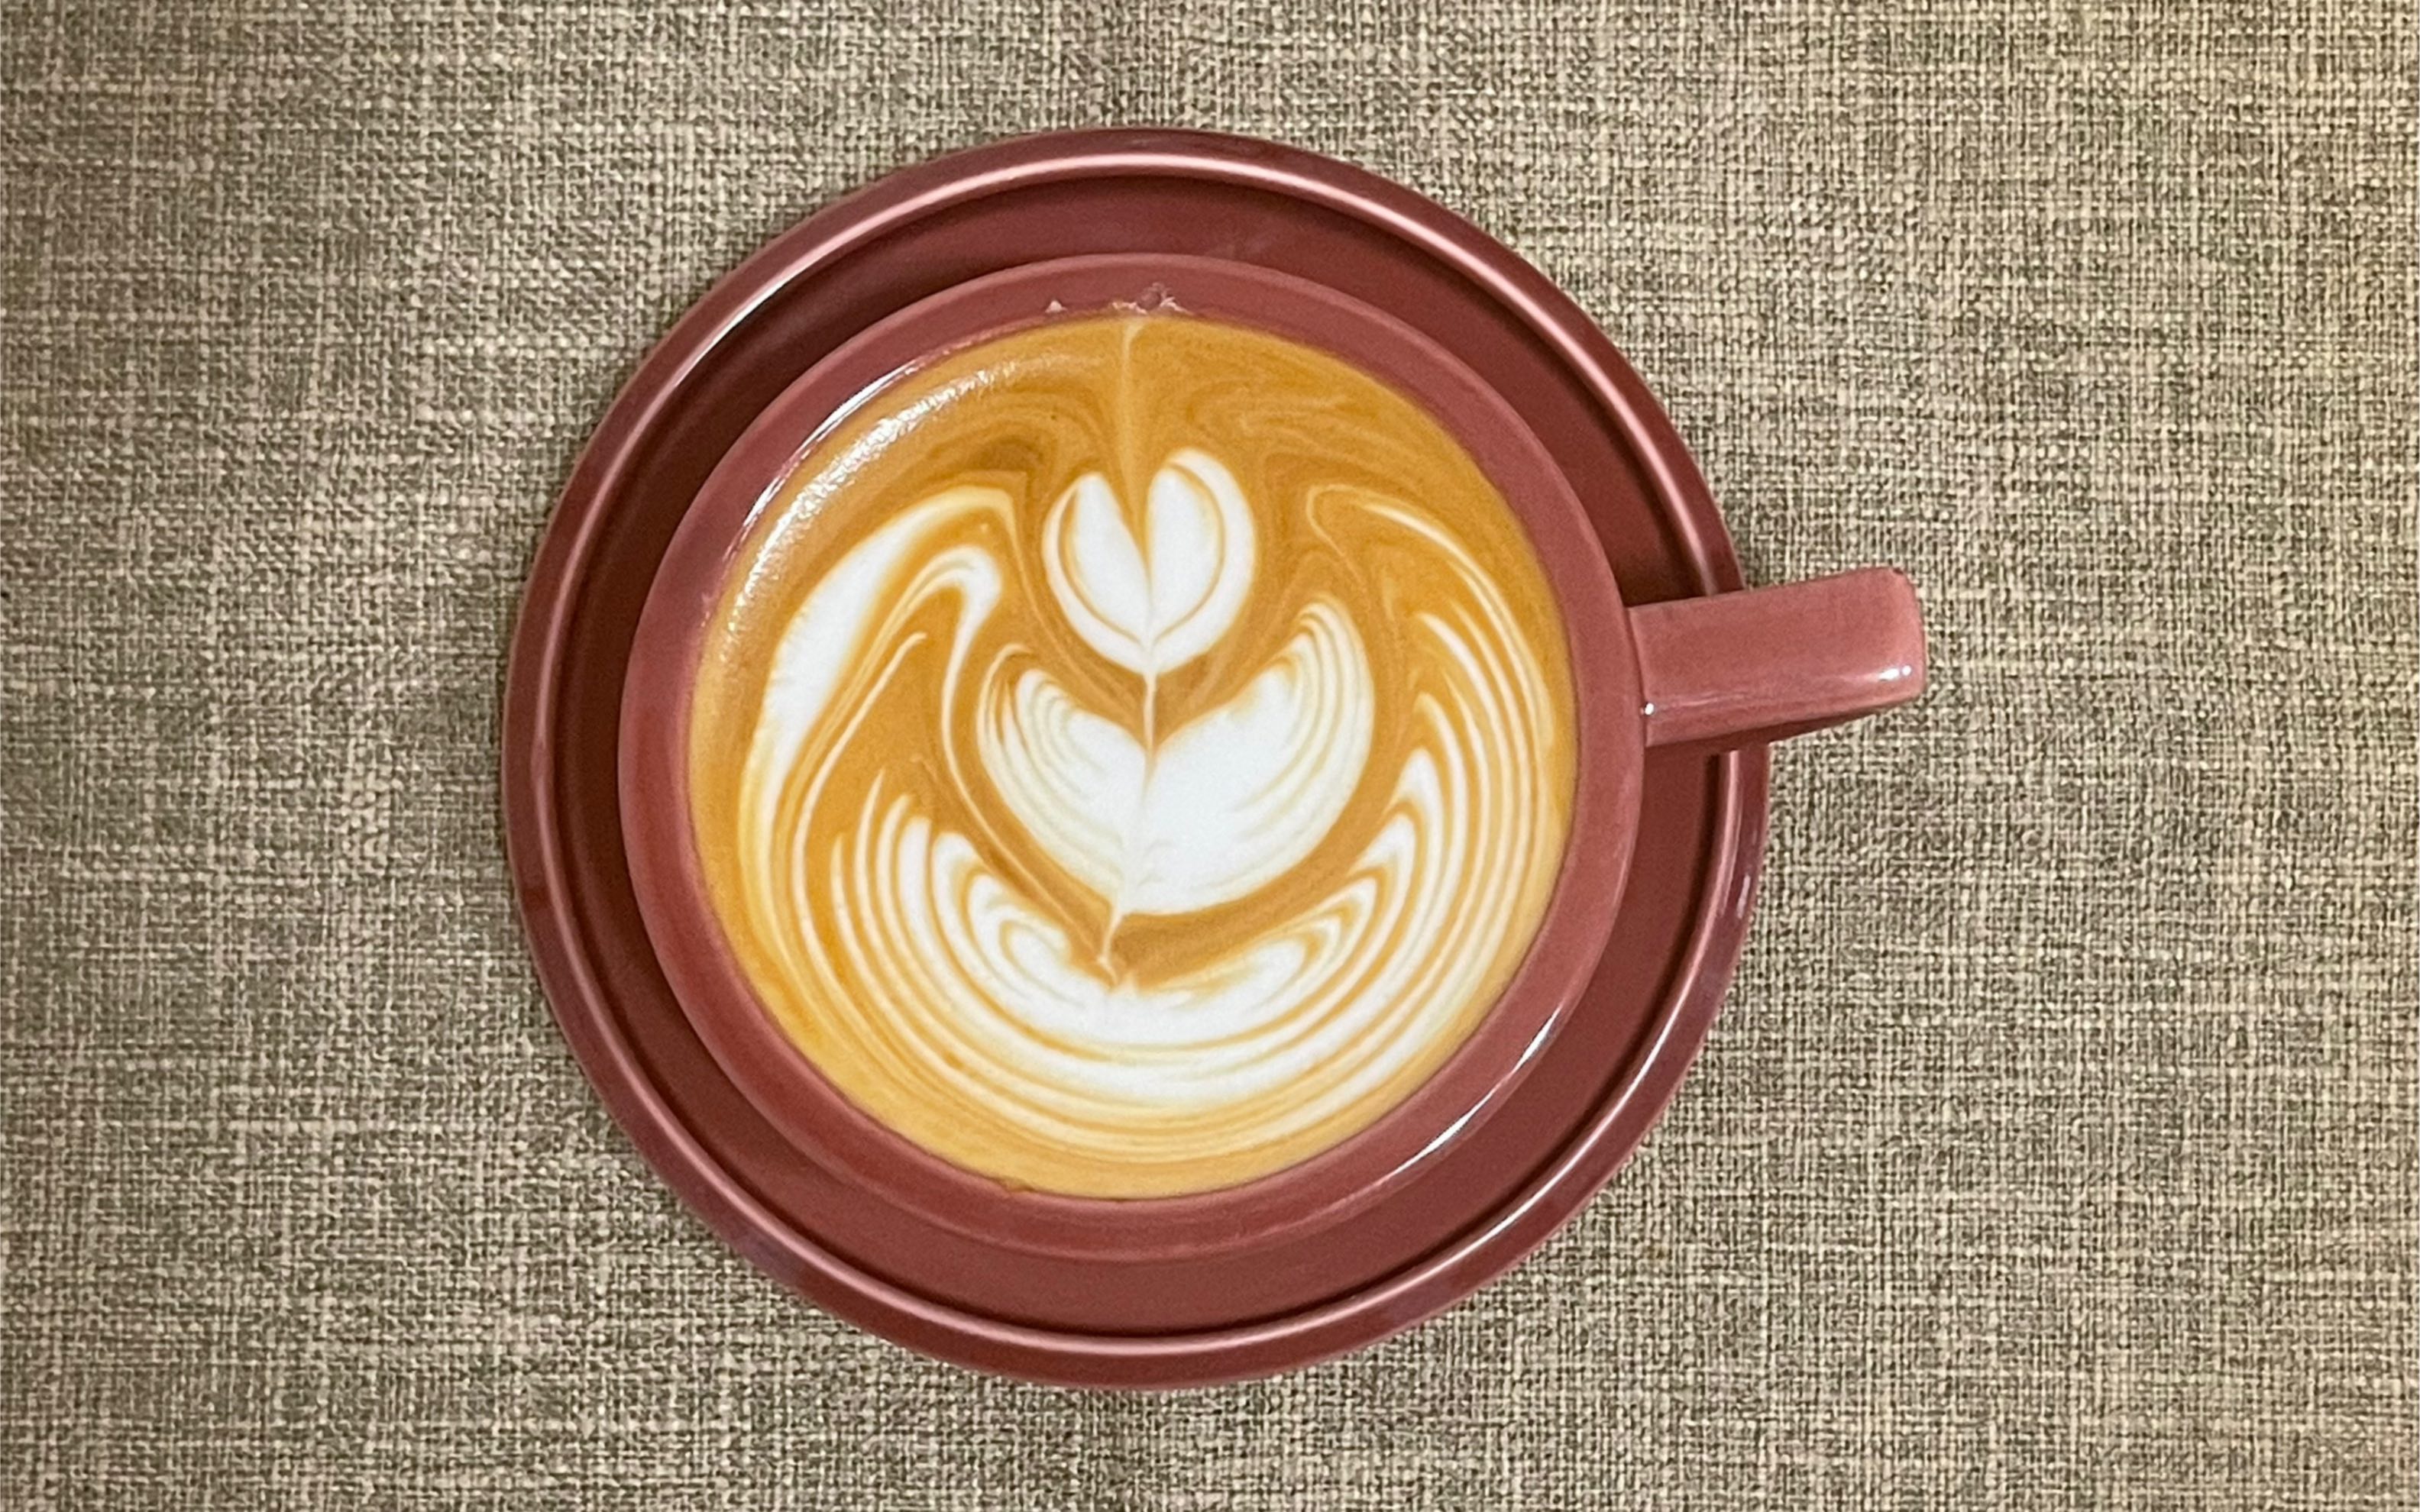 咖啡拉花图案名称图片